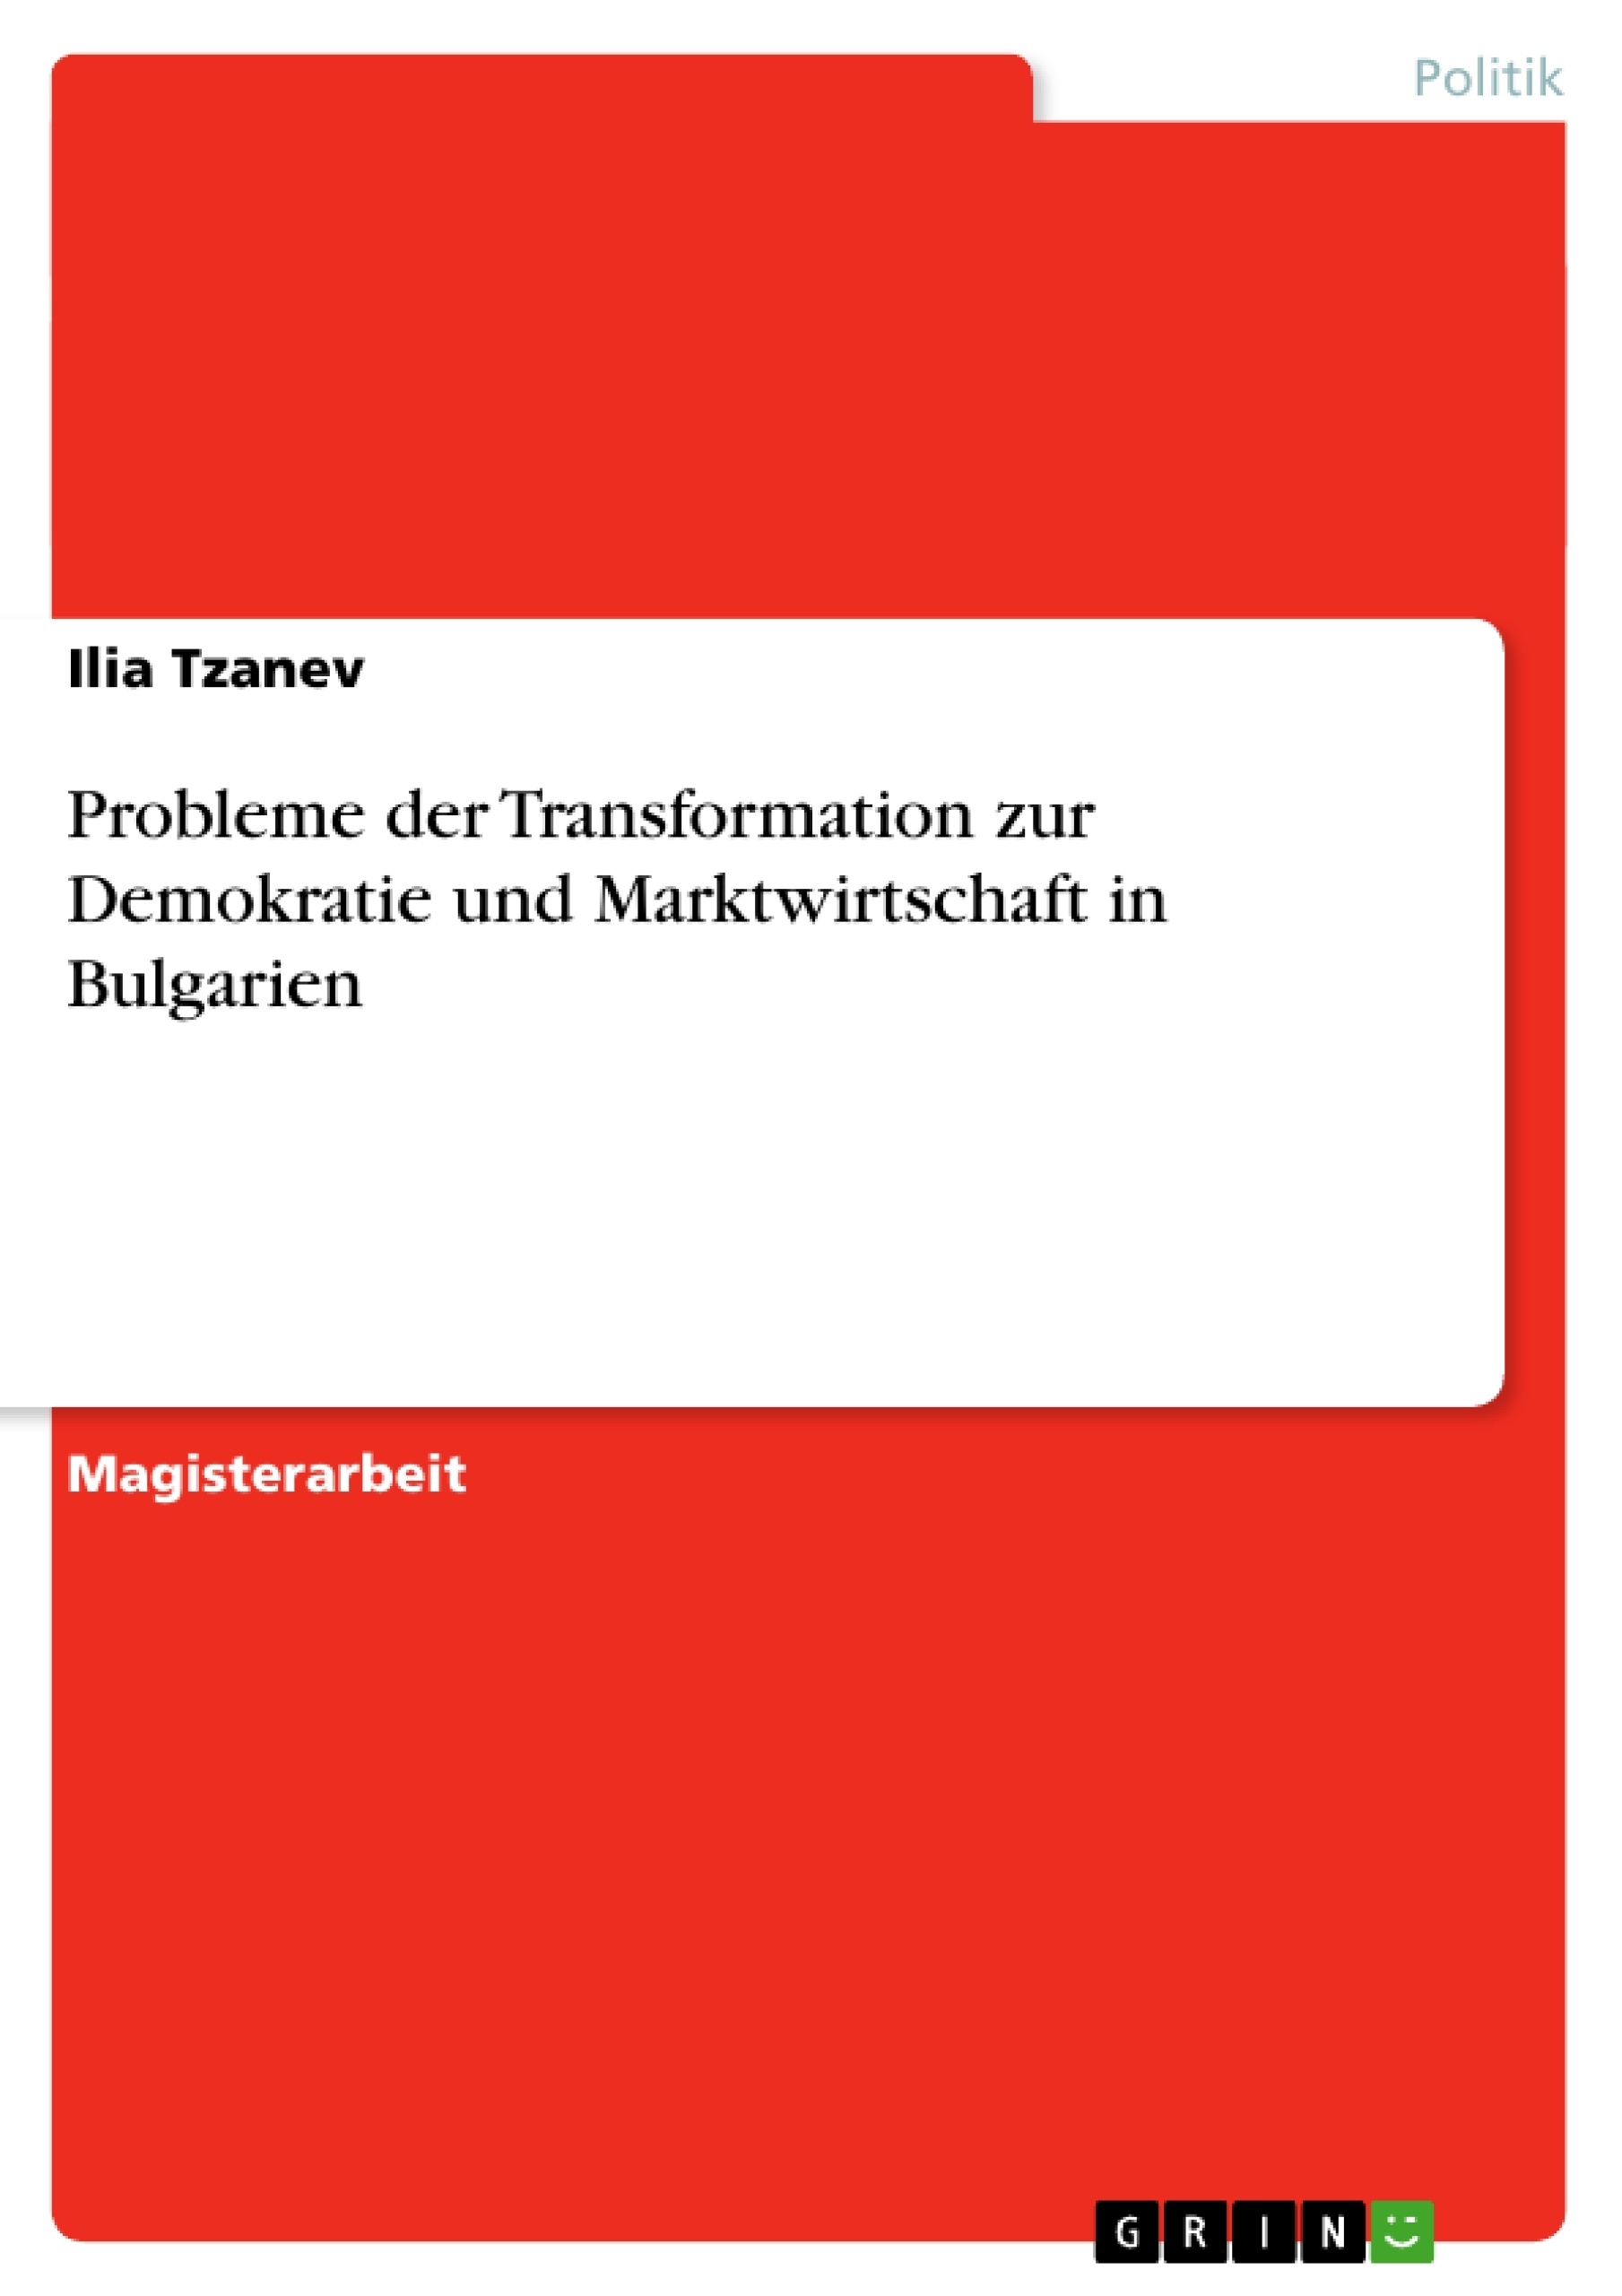 Título: Probleme der Transformation zur Demokratie und Marktwirtschaft in Bulgarien